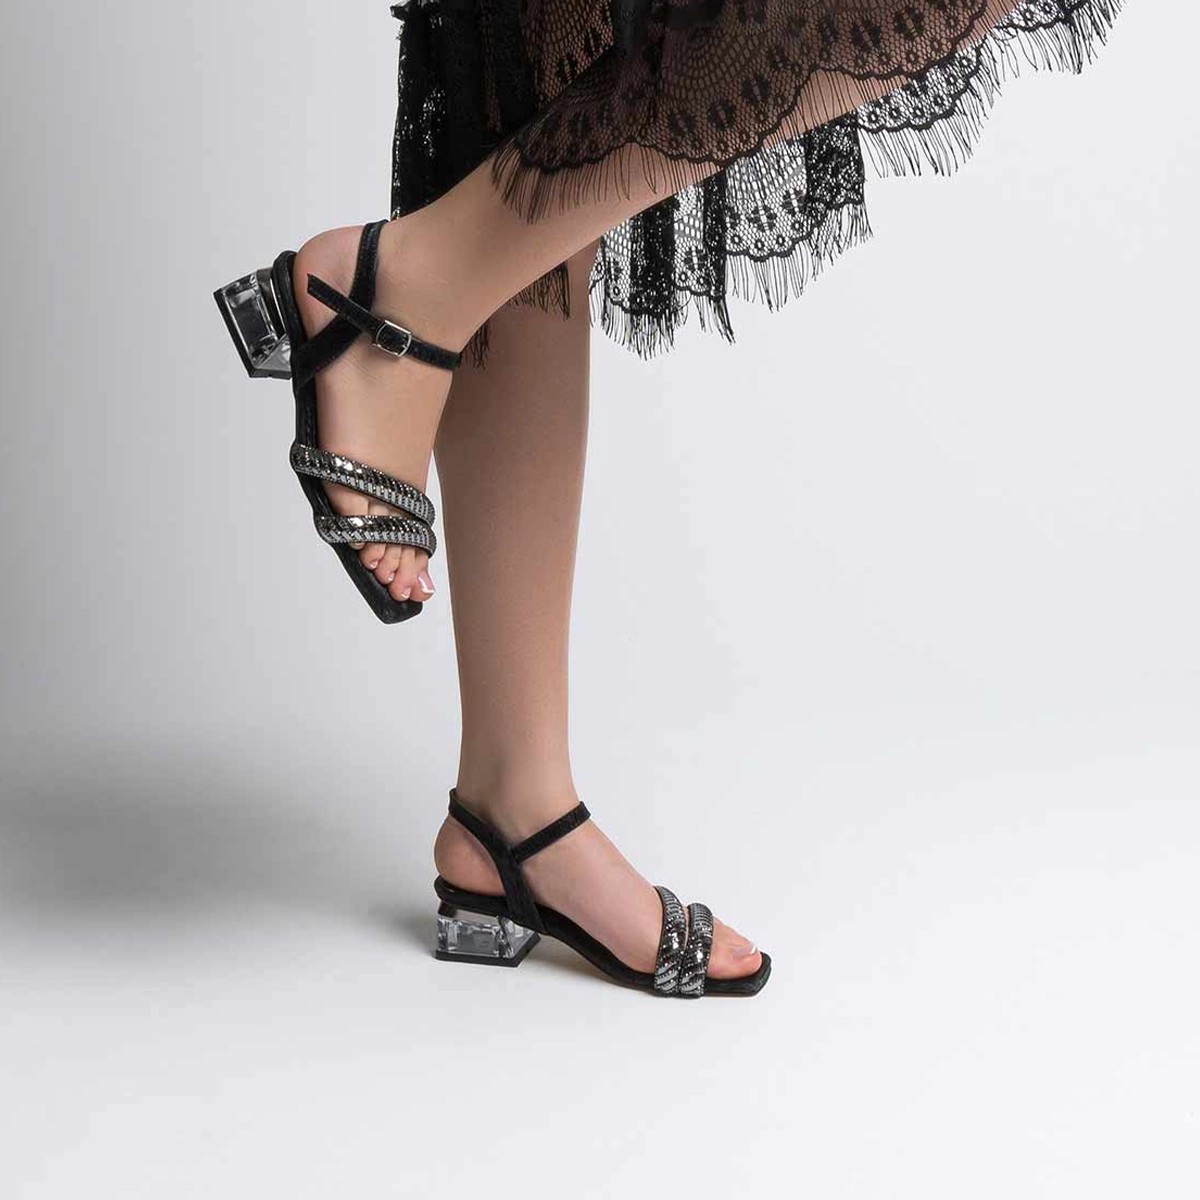 Tekstil Taşlı Kalın Kısa Topuklu Sandalet - Siyah